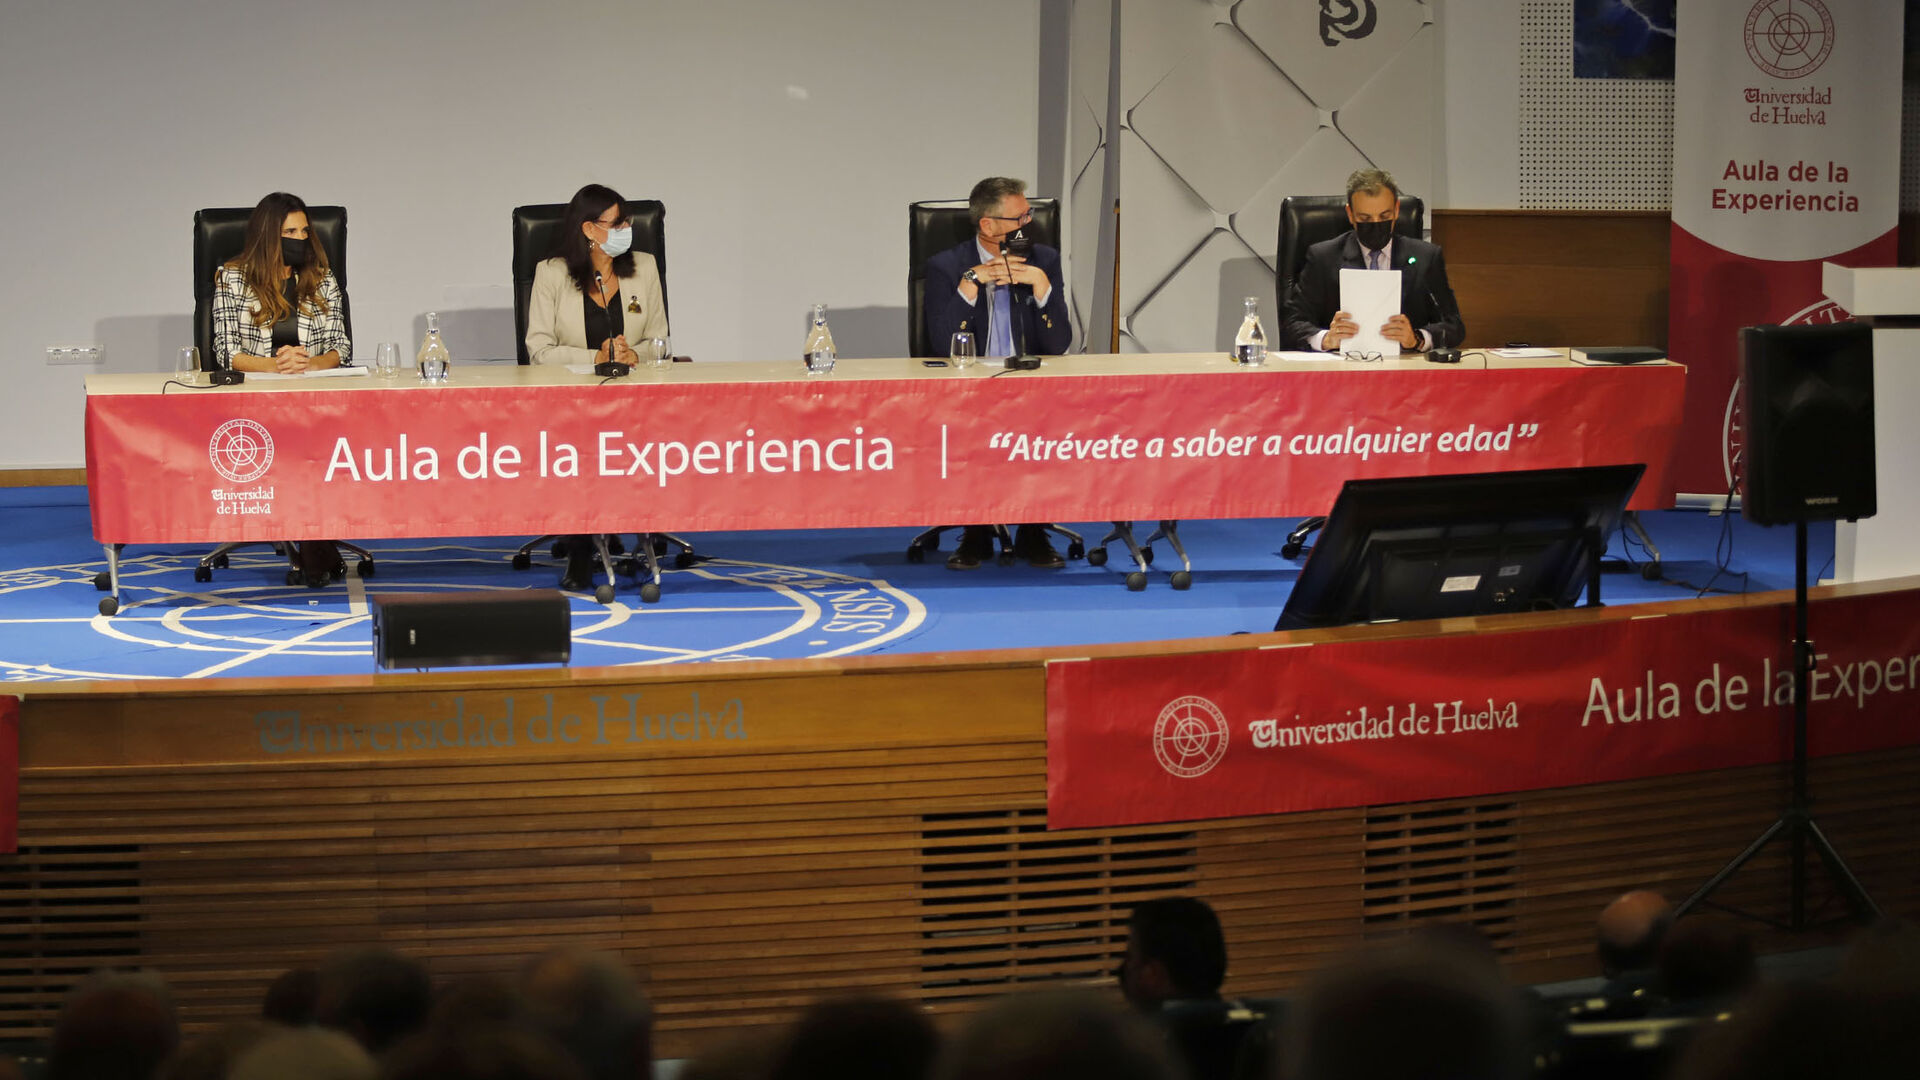 Im&aacute;genes de la inauguraci&oacute;n del Aula de la Experiencia de la Universidad de Huelva